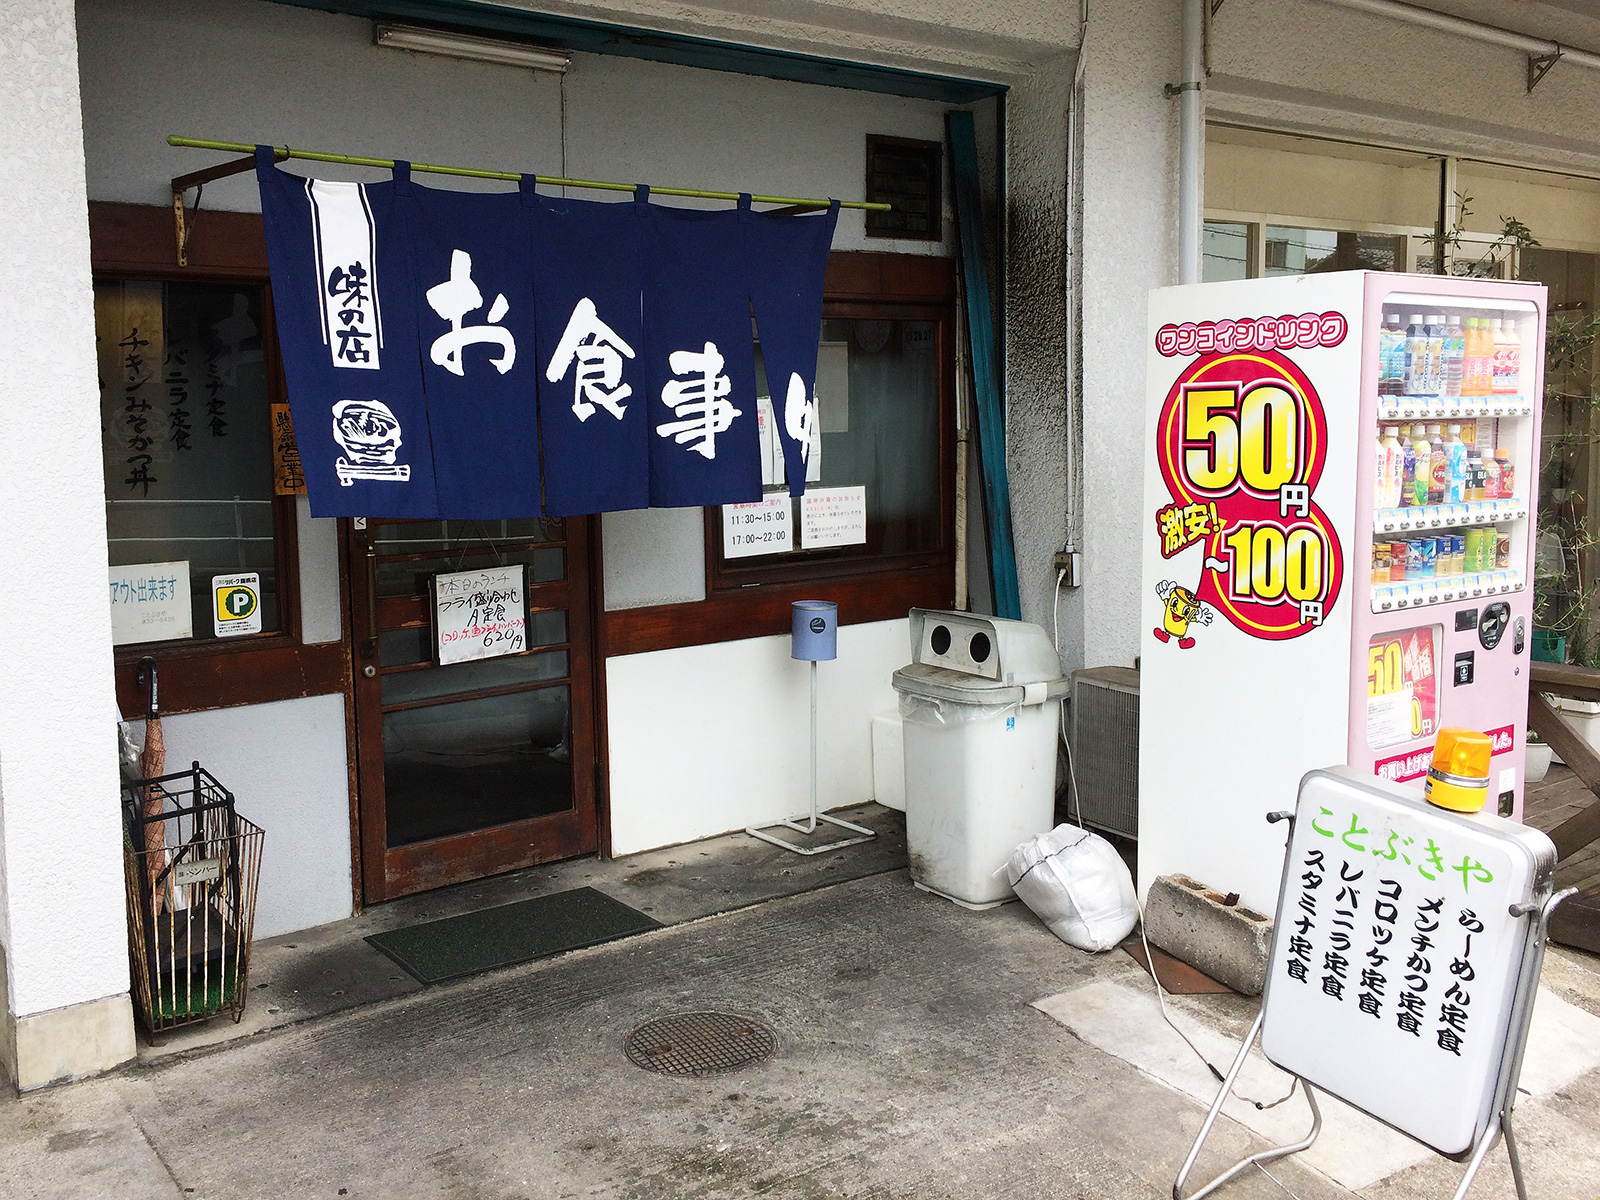 天白区 ひとりめし食います 名古屋のお値打ちなランチを紹介するブログ